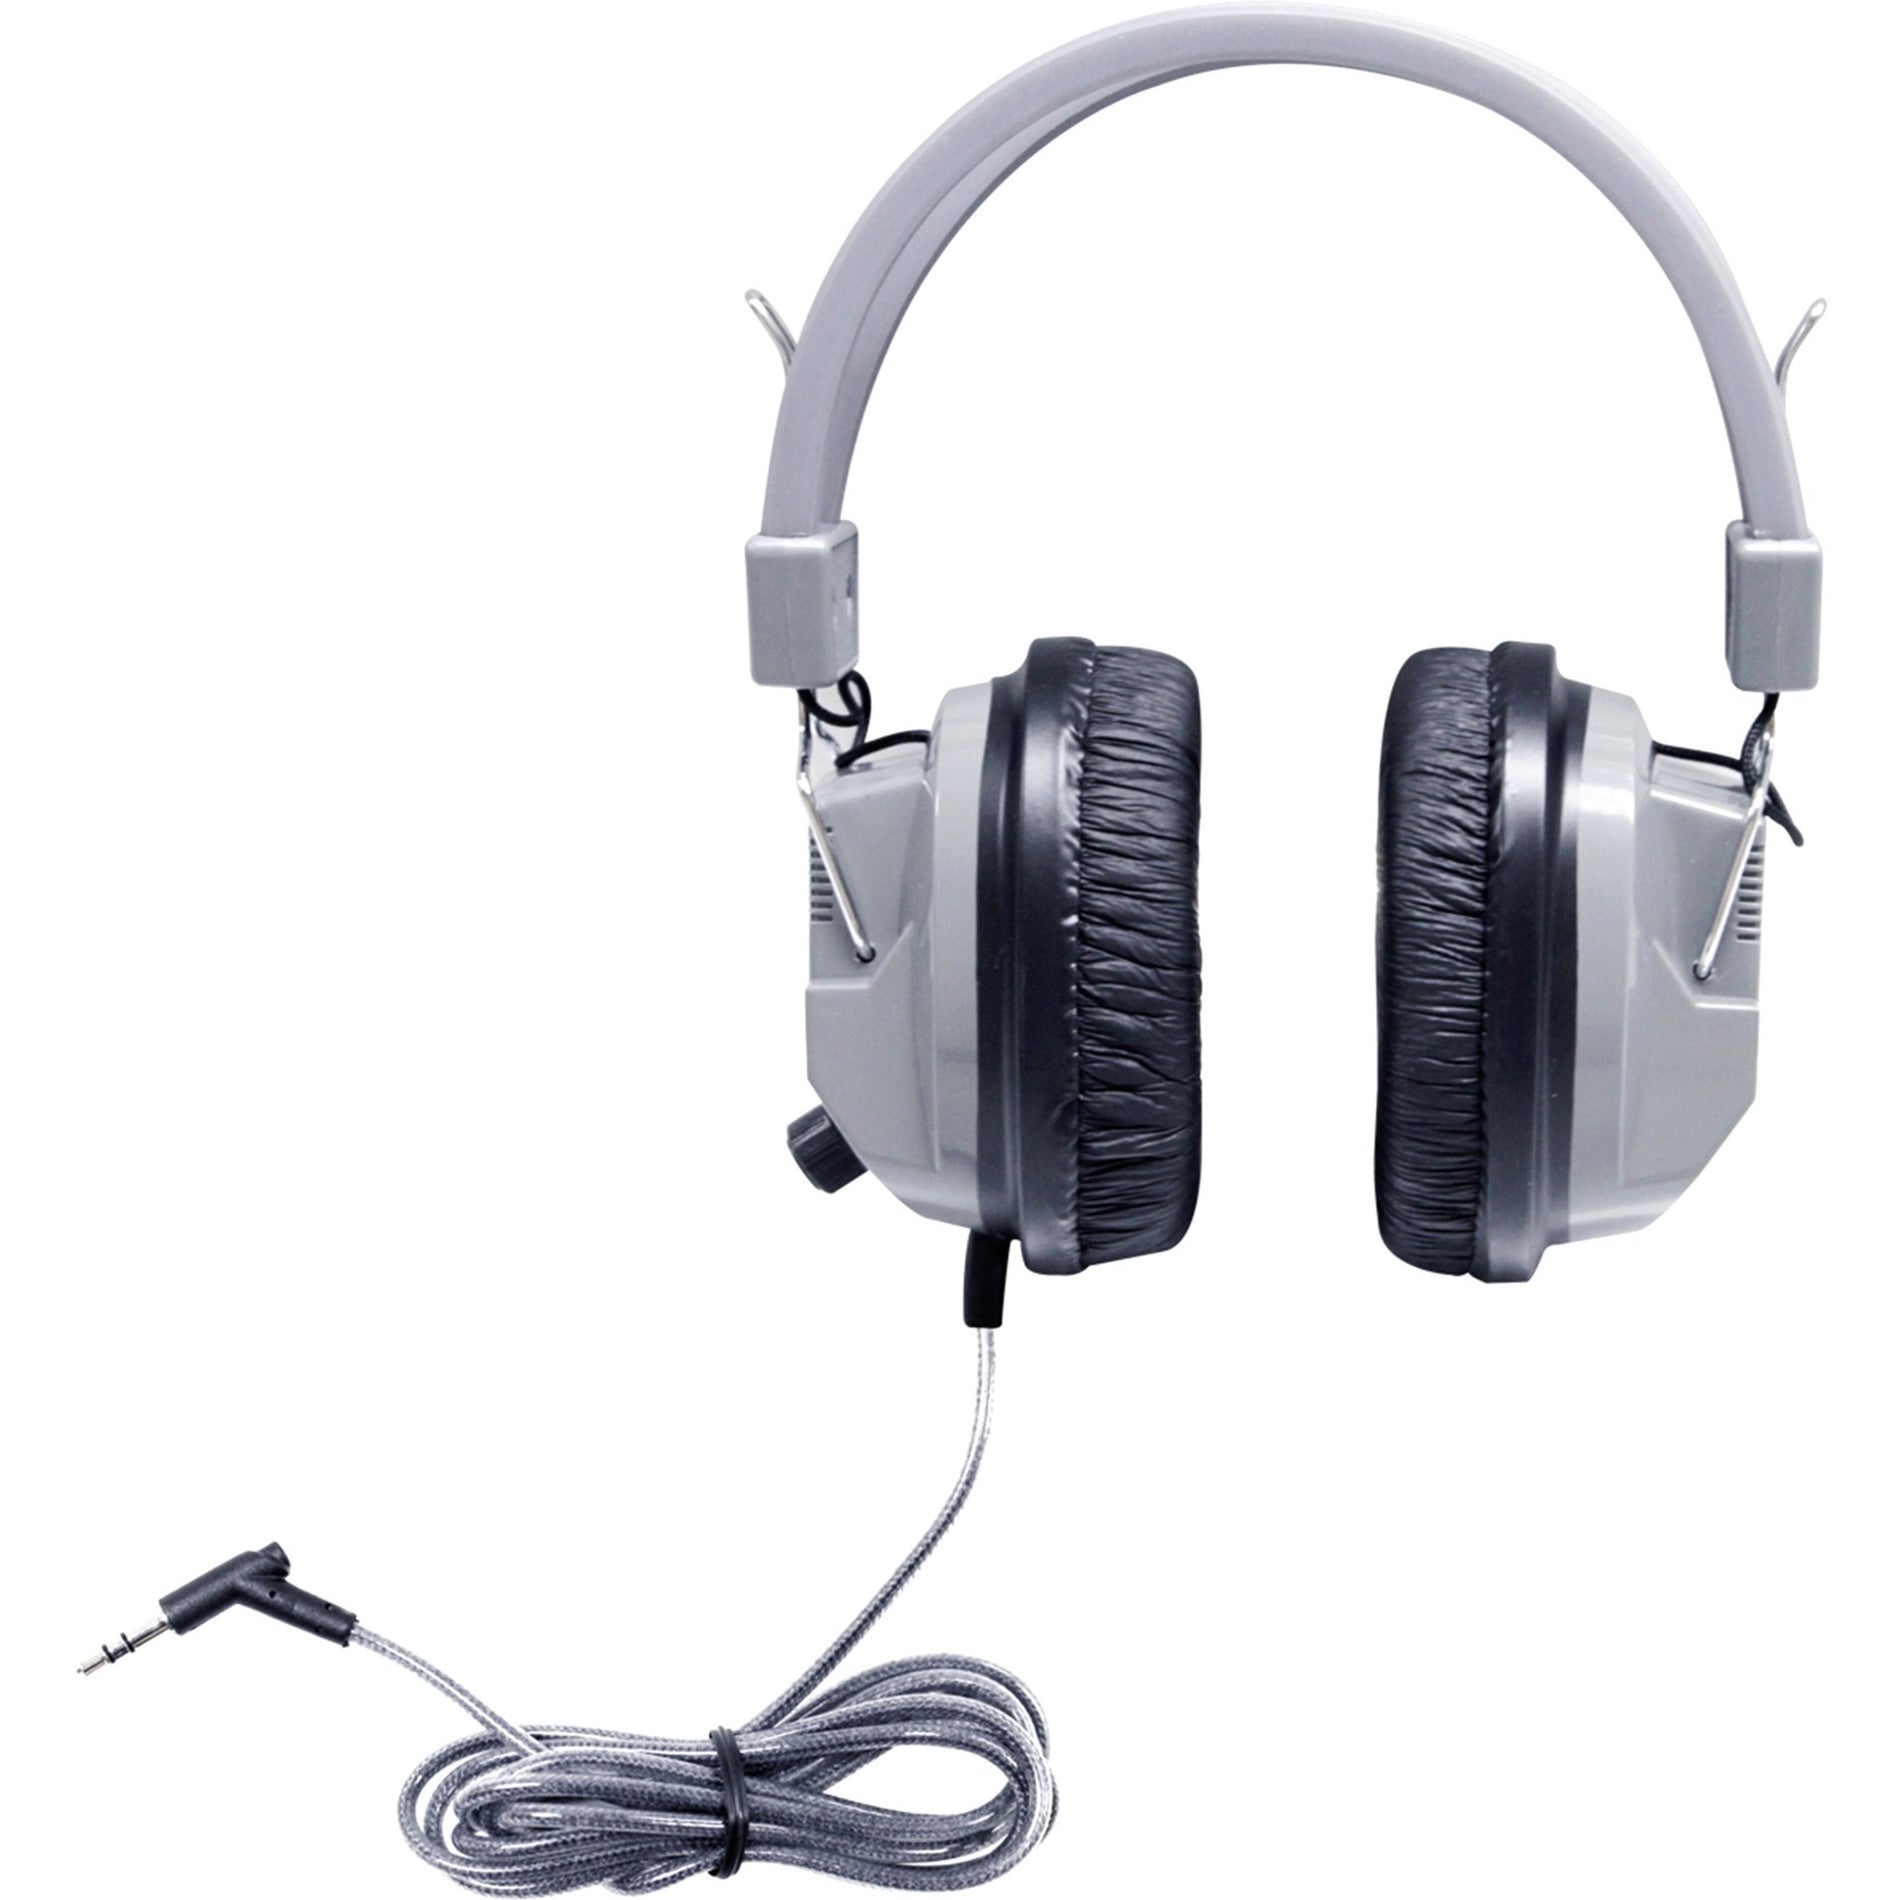 品牌名称：Hamilton Buhl  学友豪华立体声耳机 3.5毫米接口和音量 耳罩式耳机，隔音效果好 防缠绕电缆和坚固设计